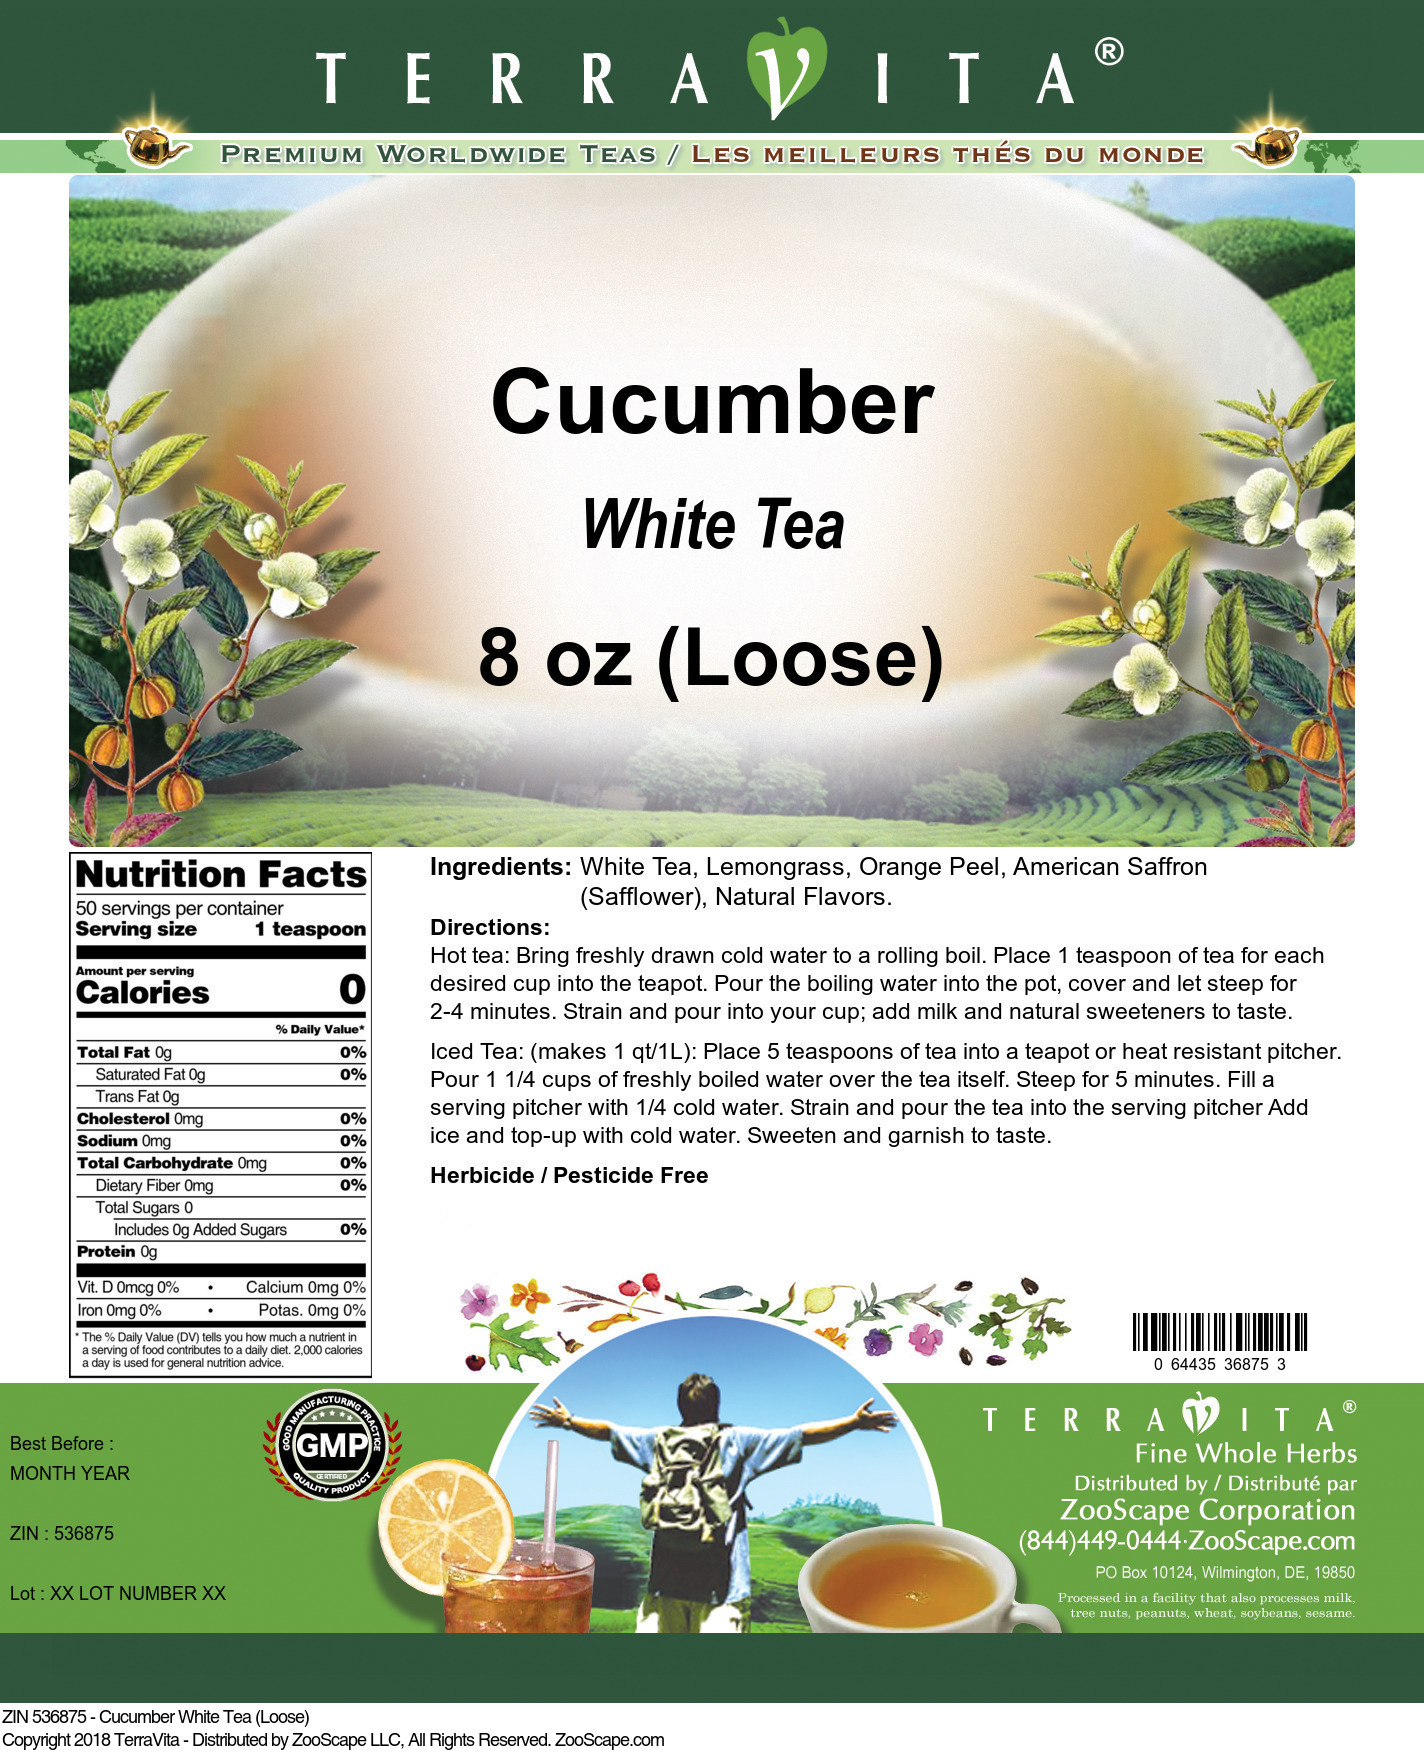 Cucumber White Tea (Loose) - Label